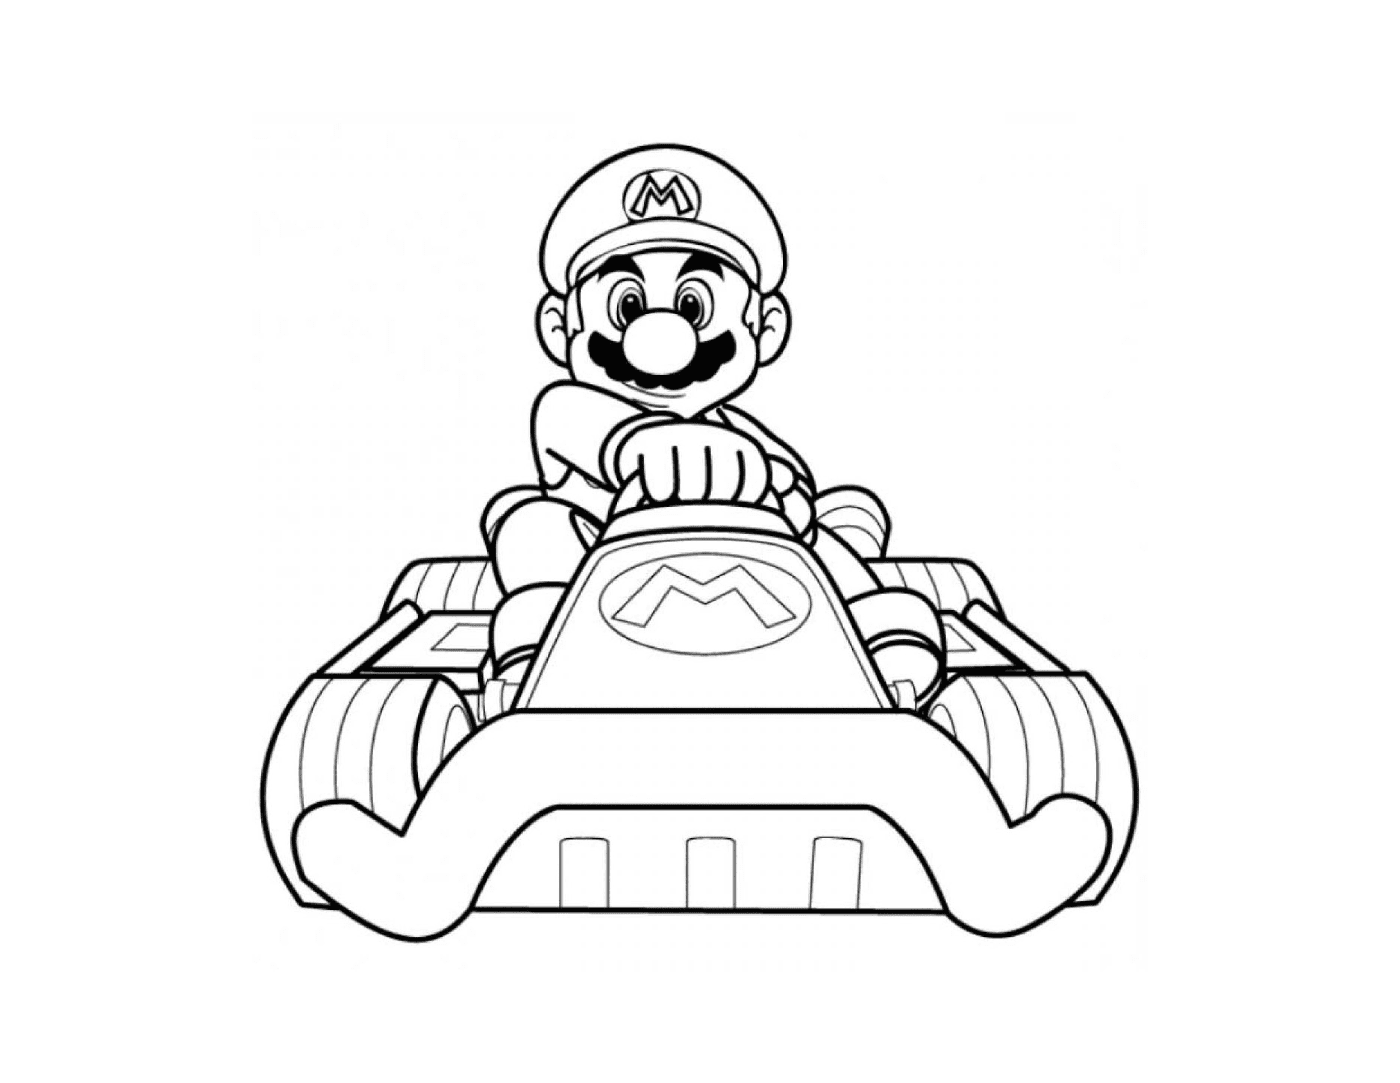  马里奥·卡尔特·怀(Mario Kart Wii)用自己的车 